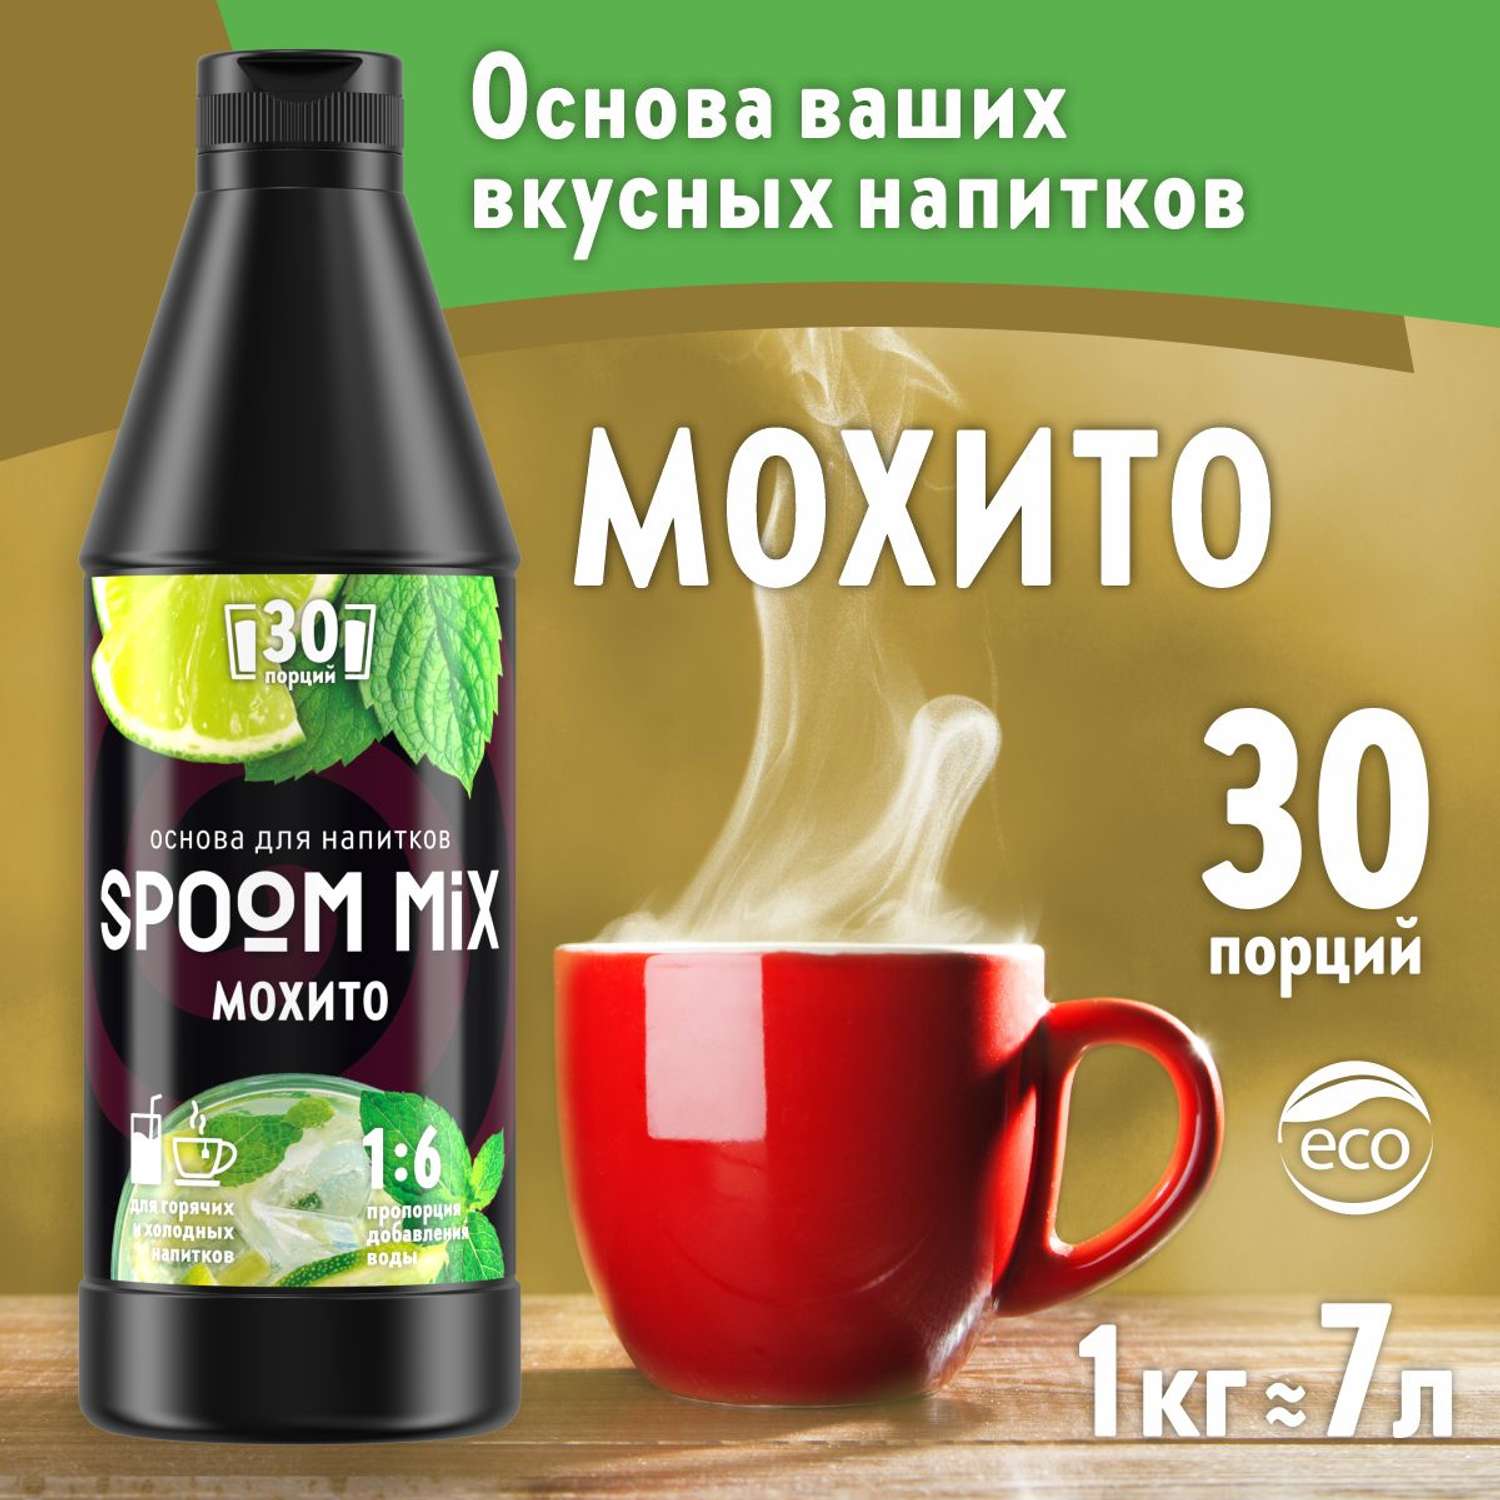 Основа для напитков SPOOM MIX Мохито 1 кг - фото 1